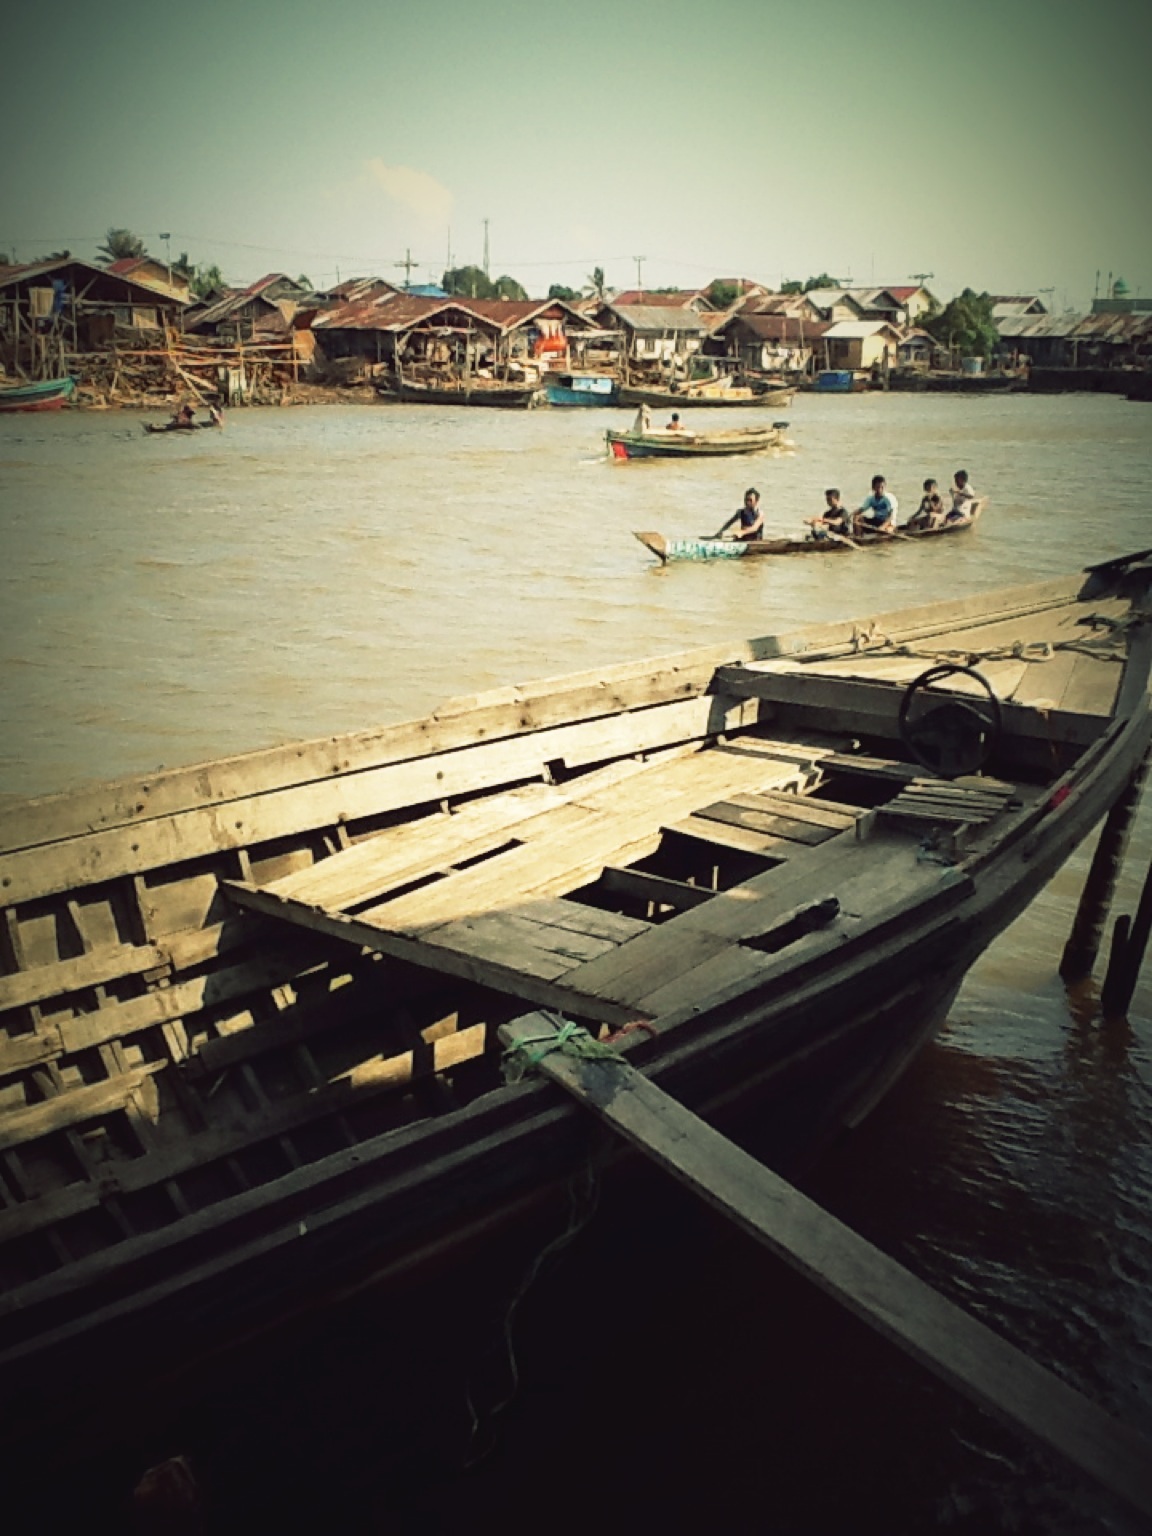 Download this Tempat Pembuatan Perahu Jukung Sungai Barito picture